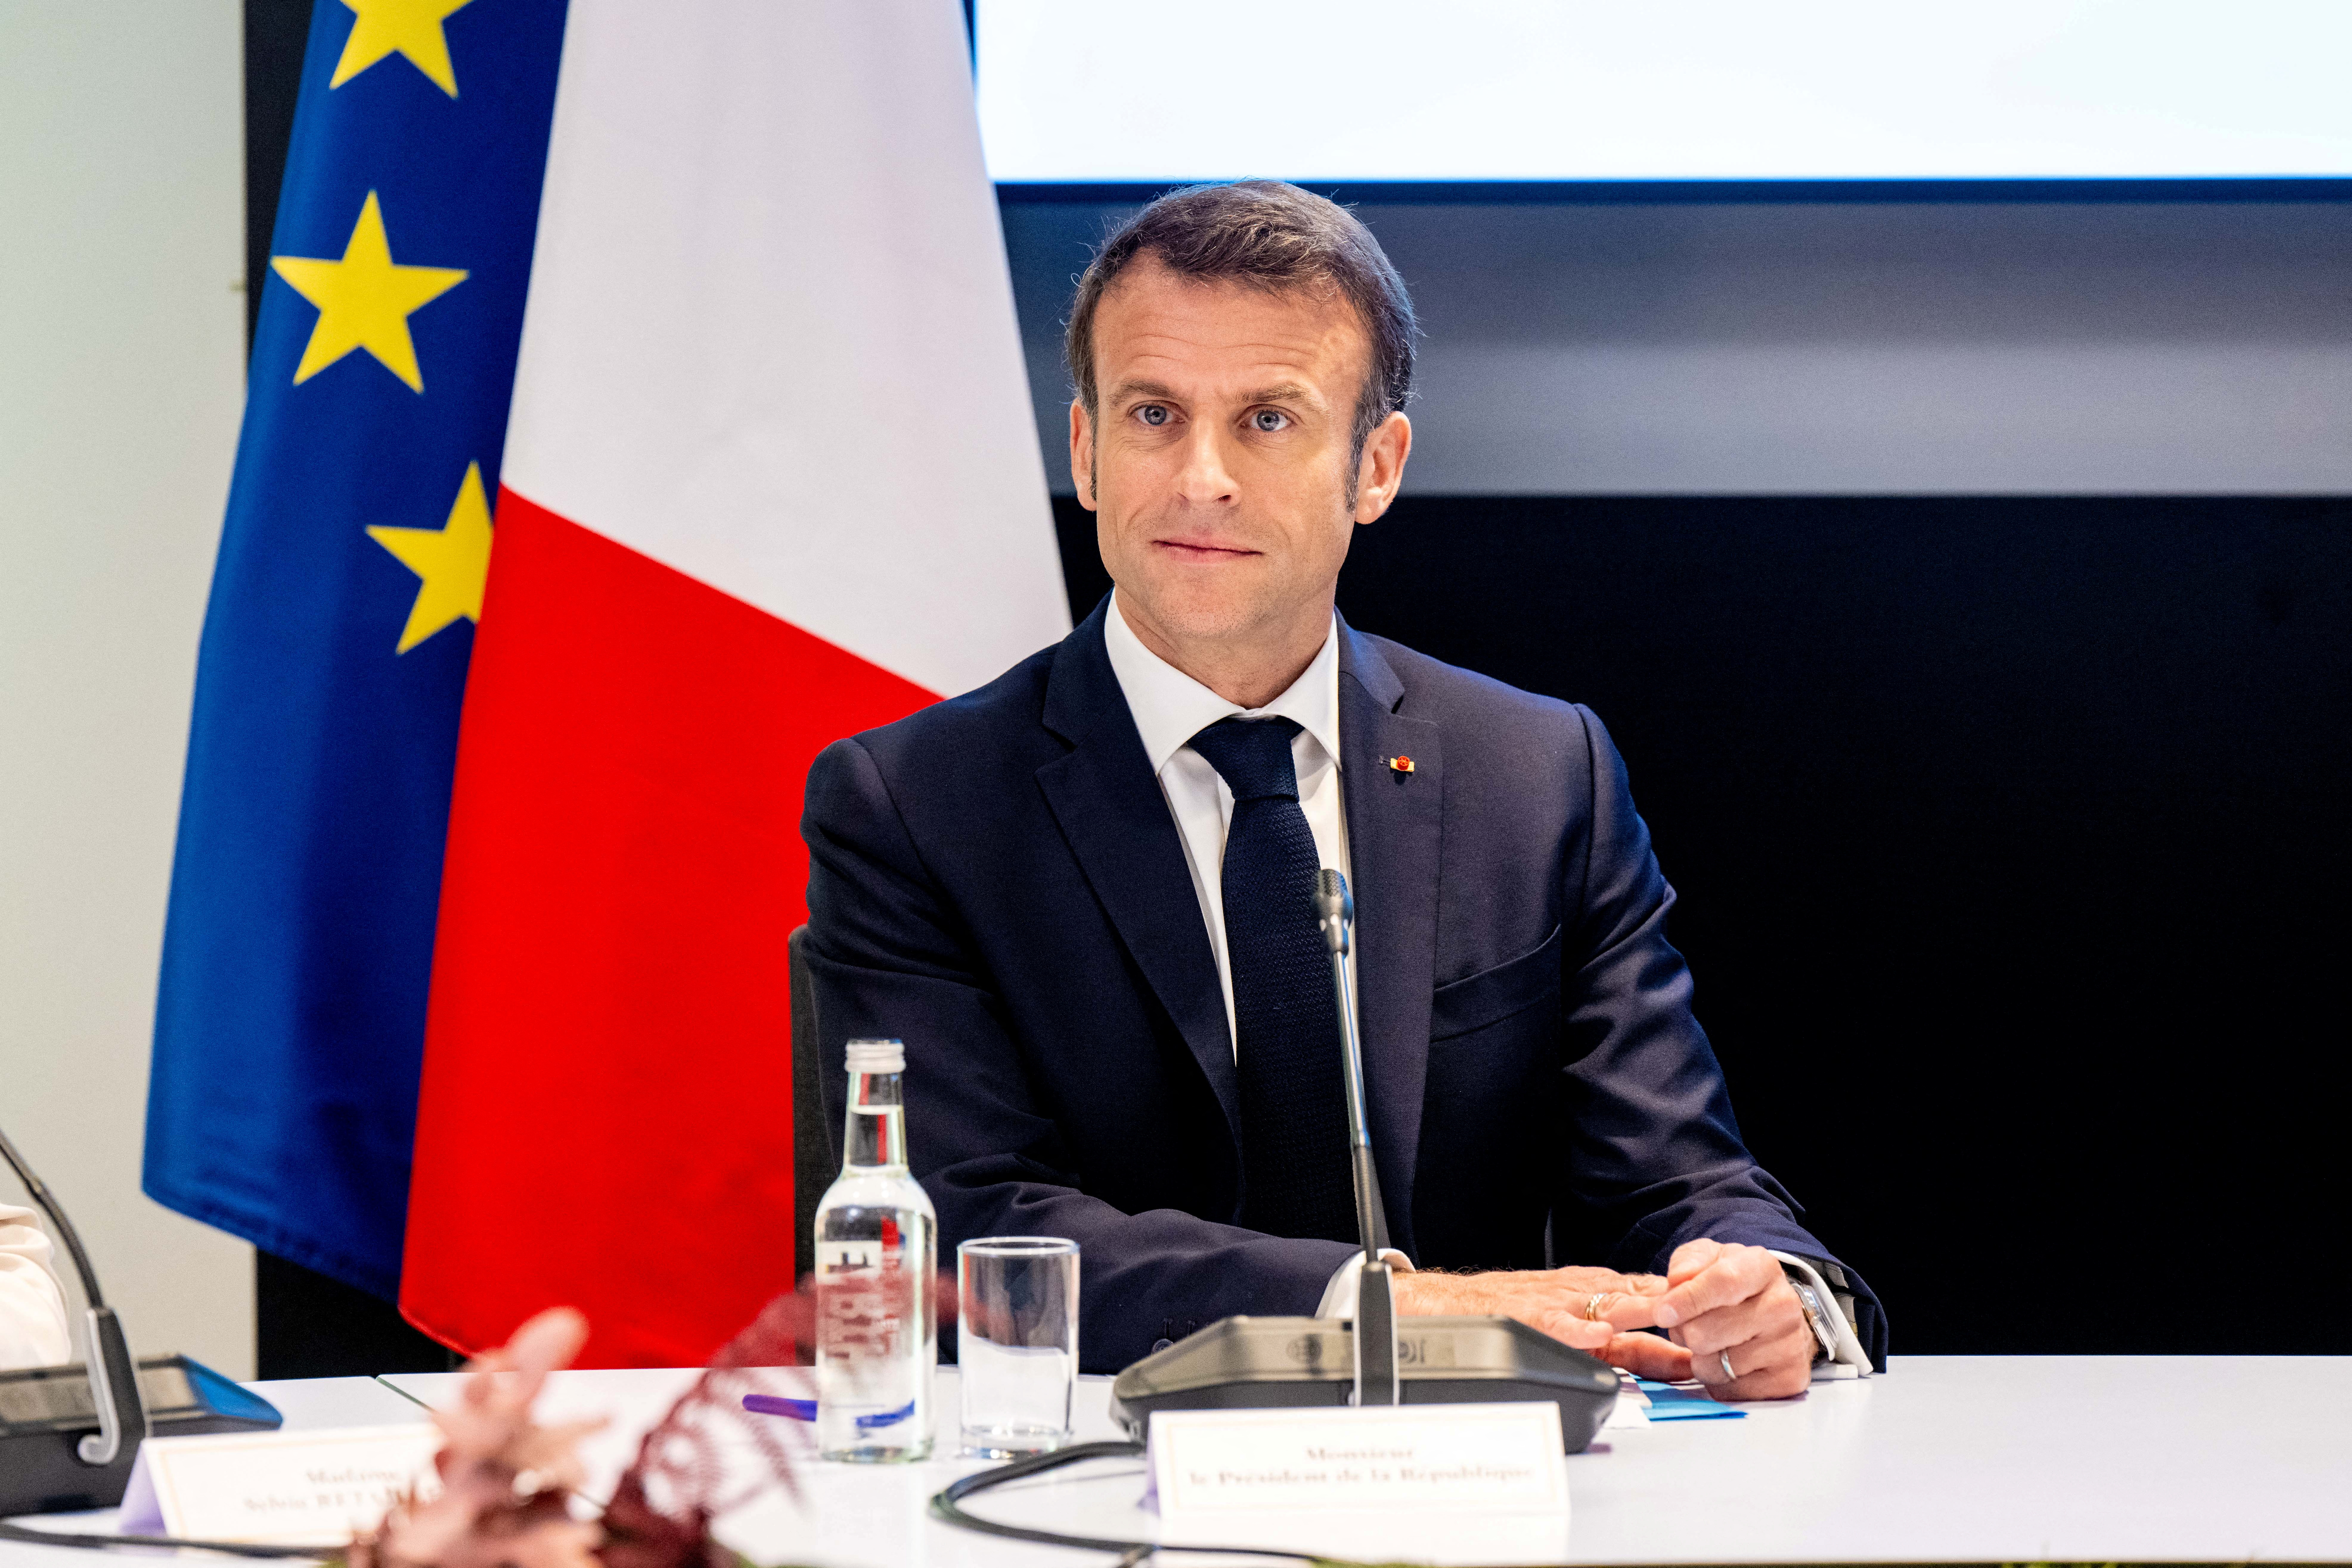 La Corte Suprema de Francia convalidó las reformas jubilatorias de Macron a pesar de las violentas protestas